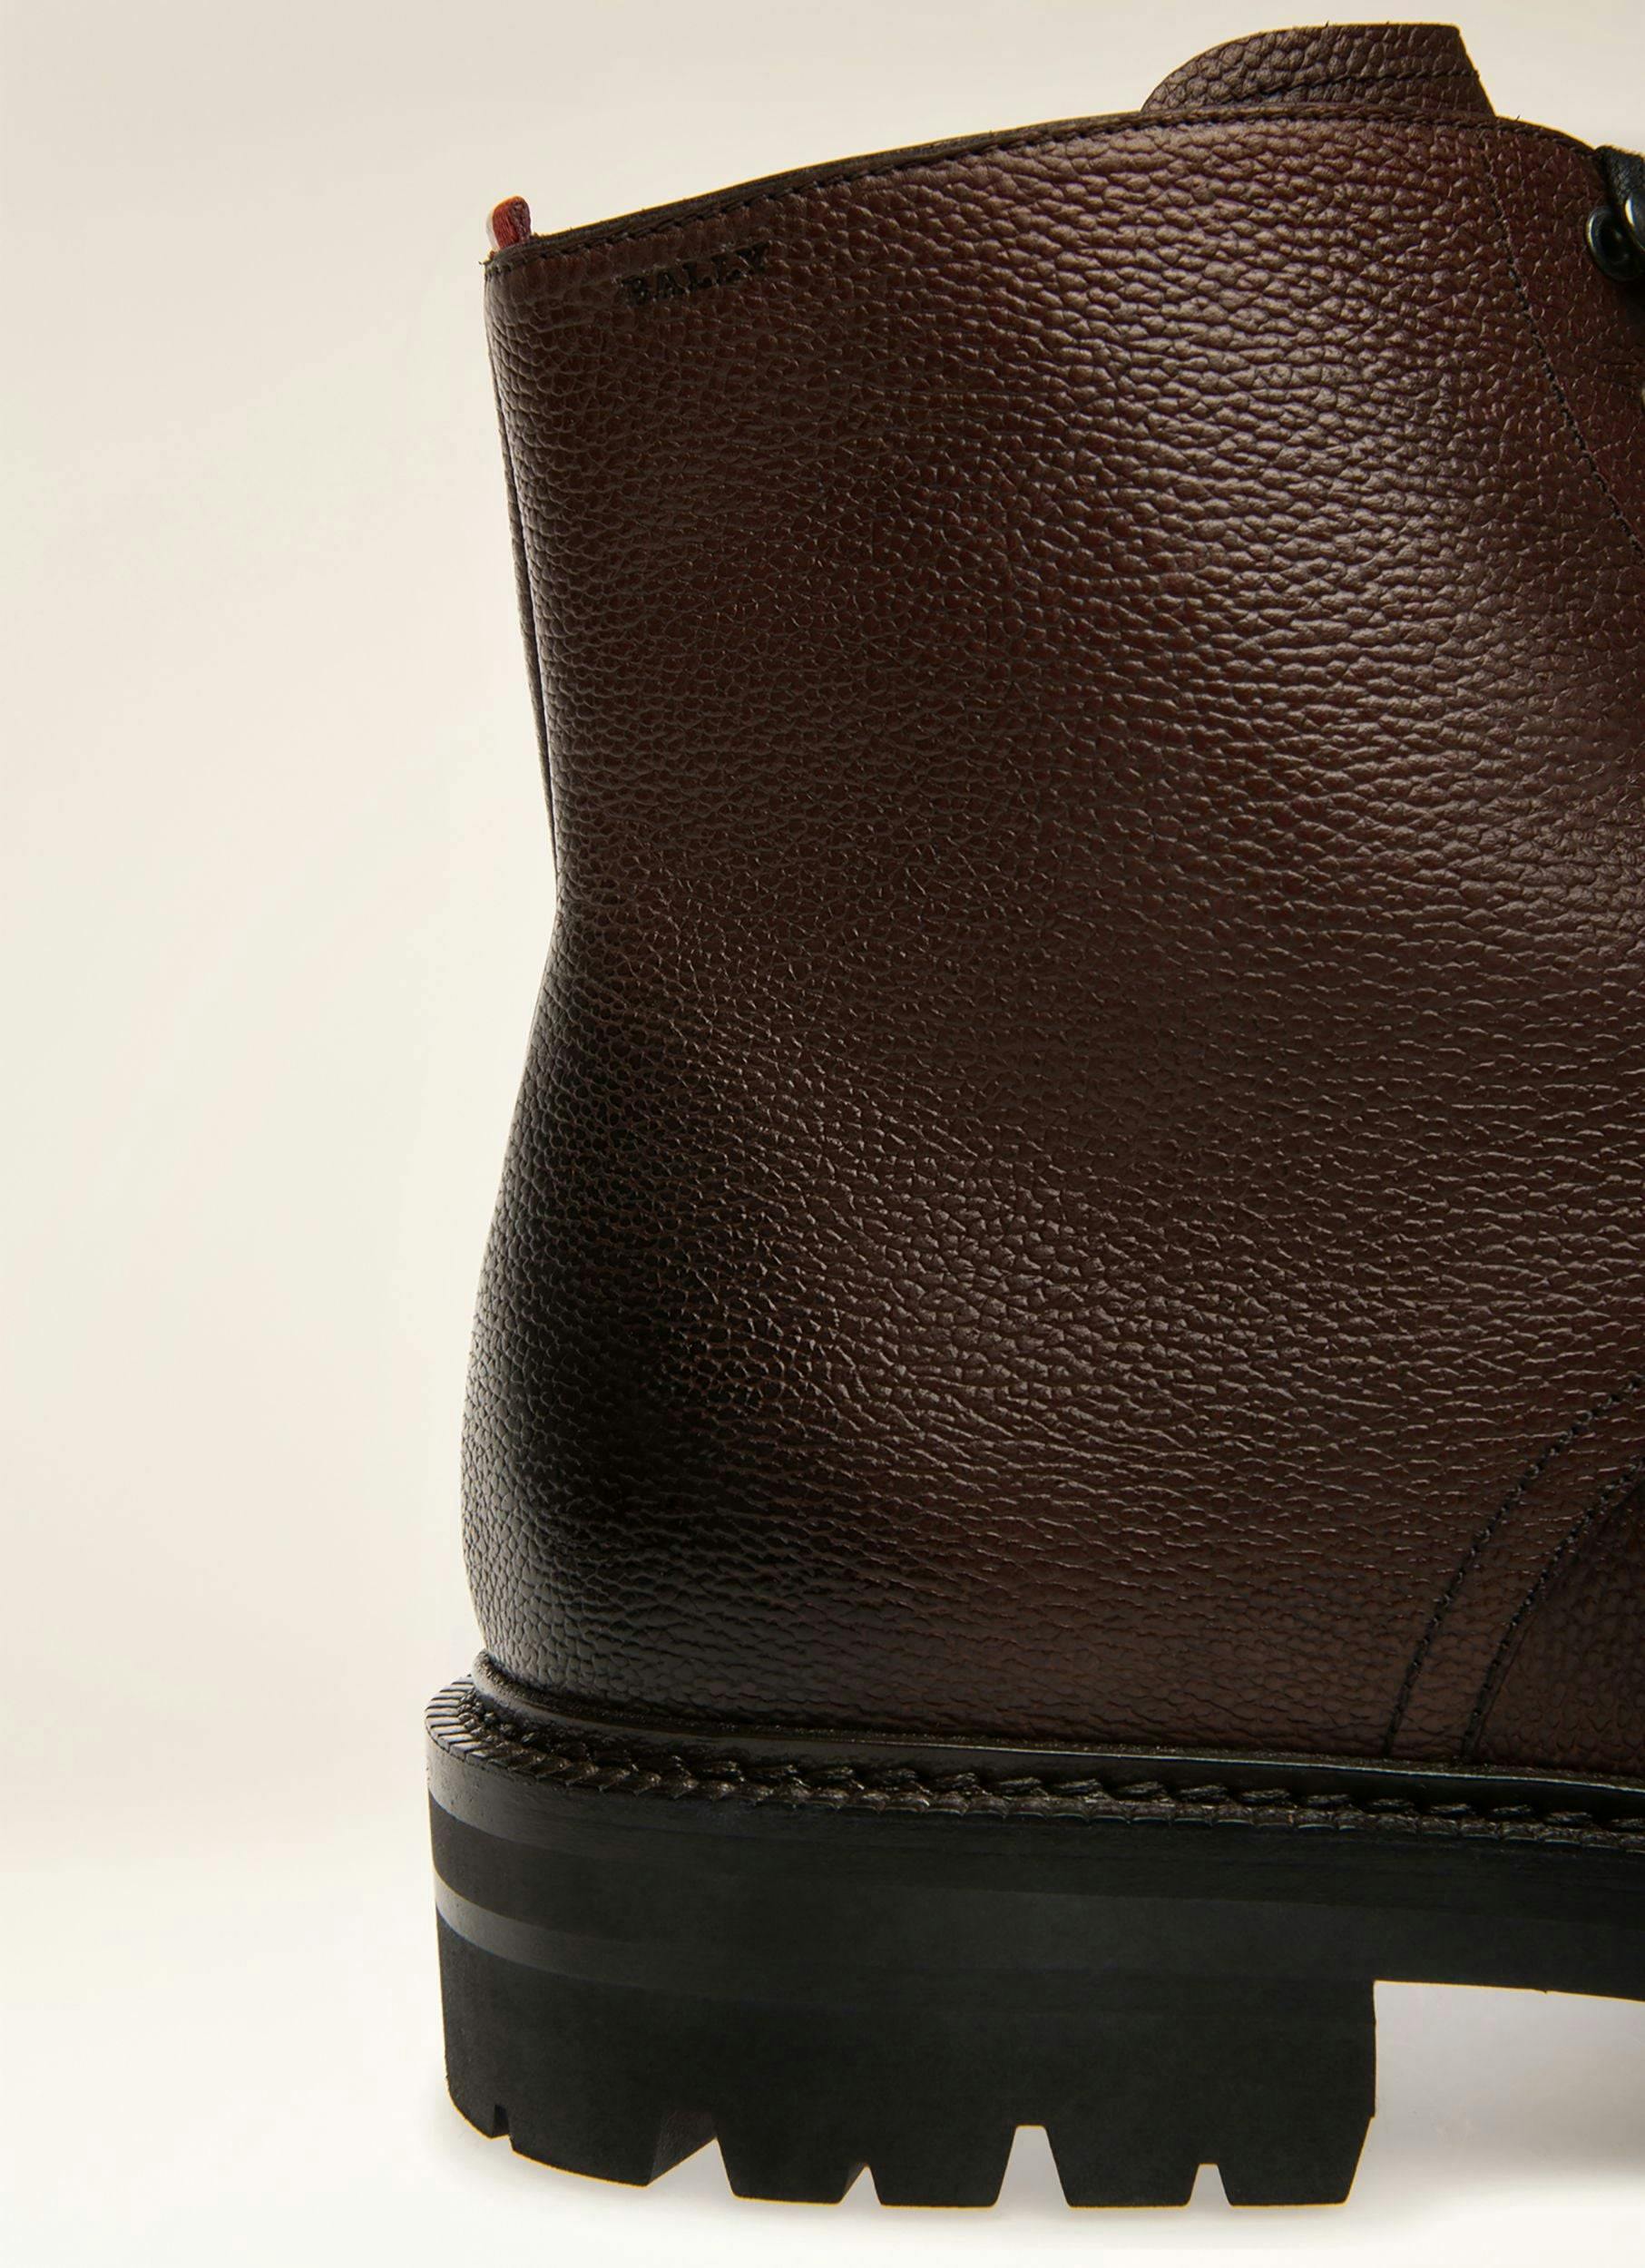 KRIENS Leather Boots In Ebony Brown - Men's - Bally - 02